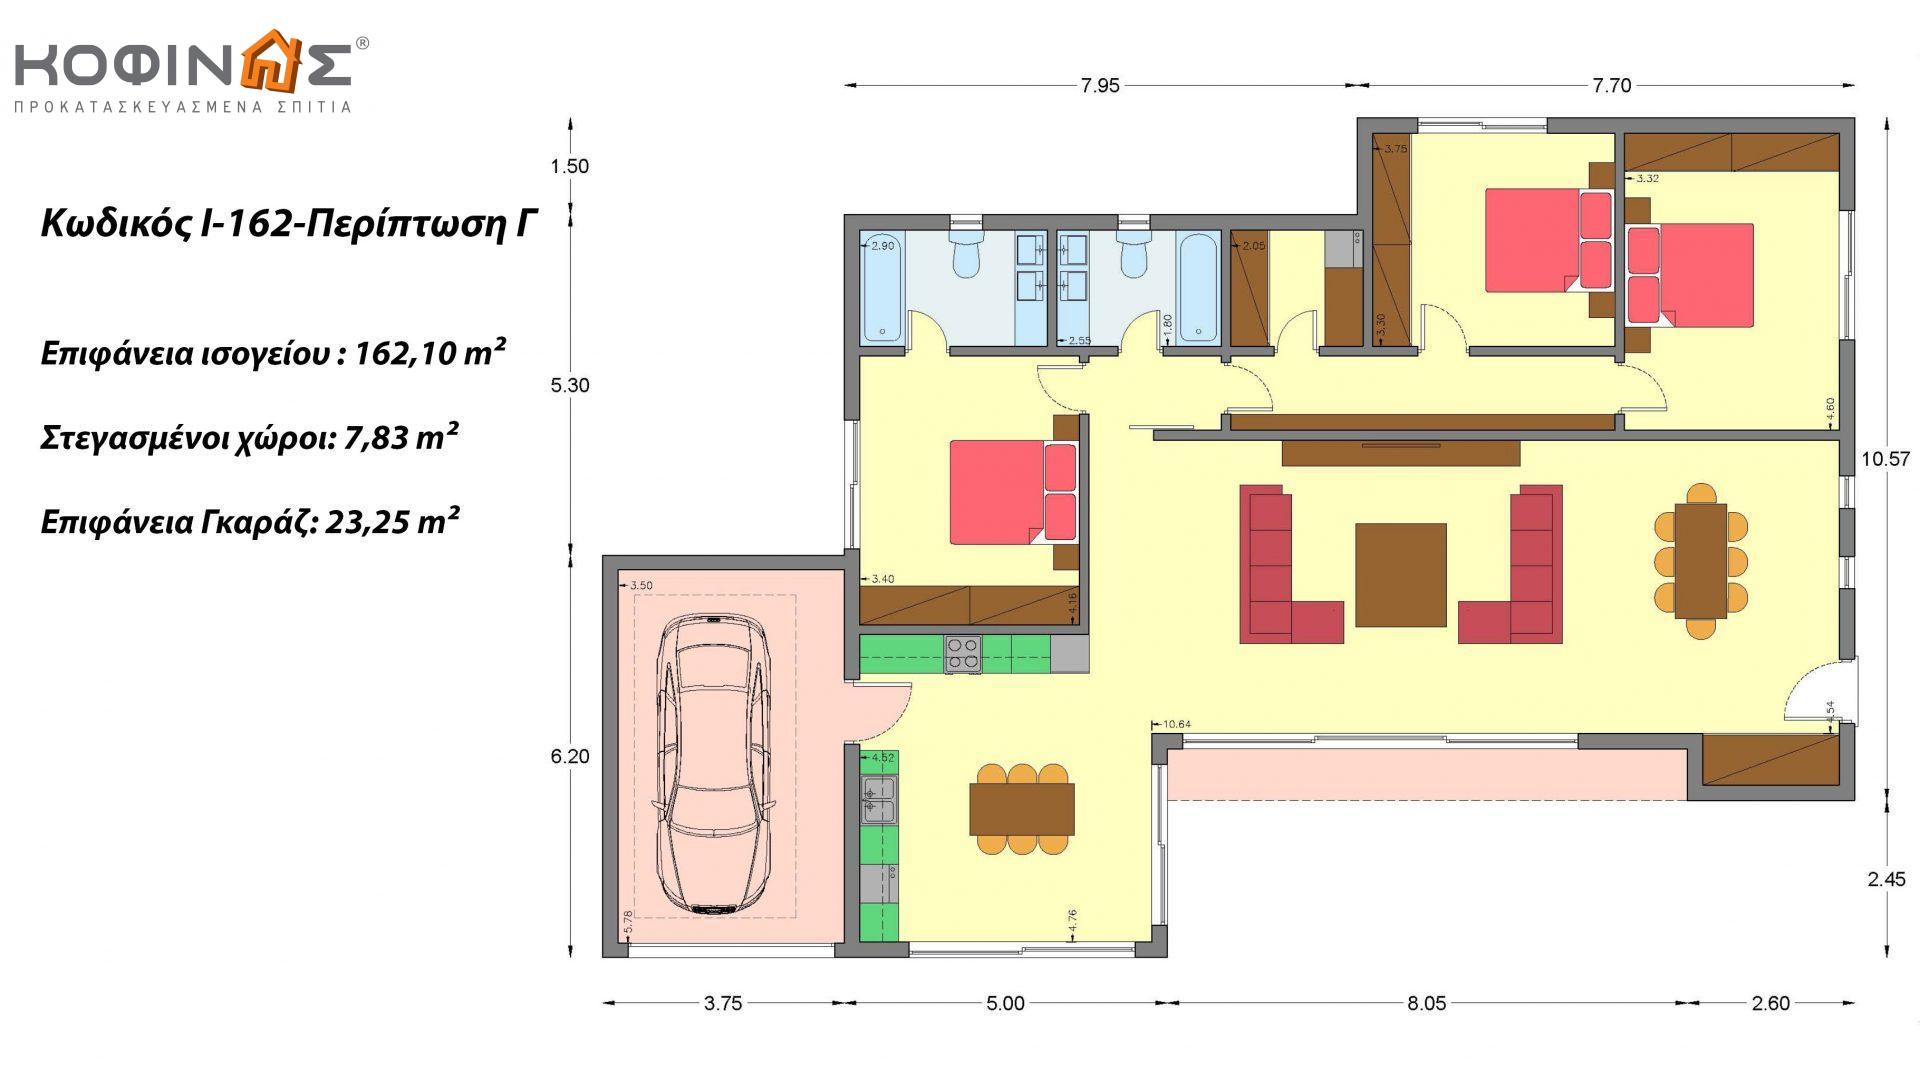 Ισόγεια Κατοικία I-162, συνολικής επιφάνειας 162,10 τ.μ.,+Γκαράζ 23.25 m²(=185,35 m²)(Περίπτωση Γ), συνολική επιφάνεια στεγασμένων χώρων 7,83 τ.μ.